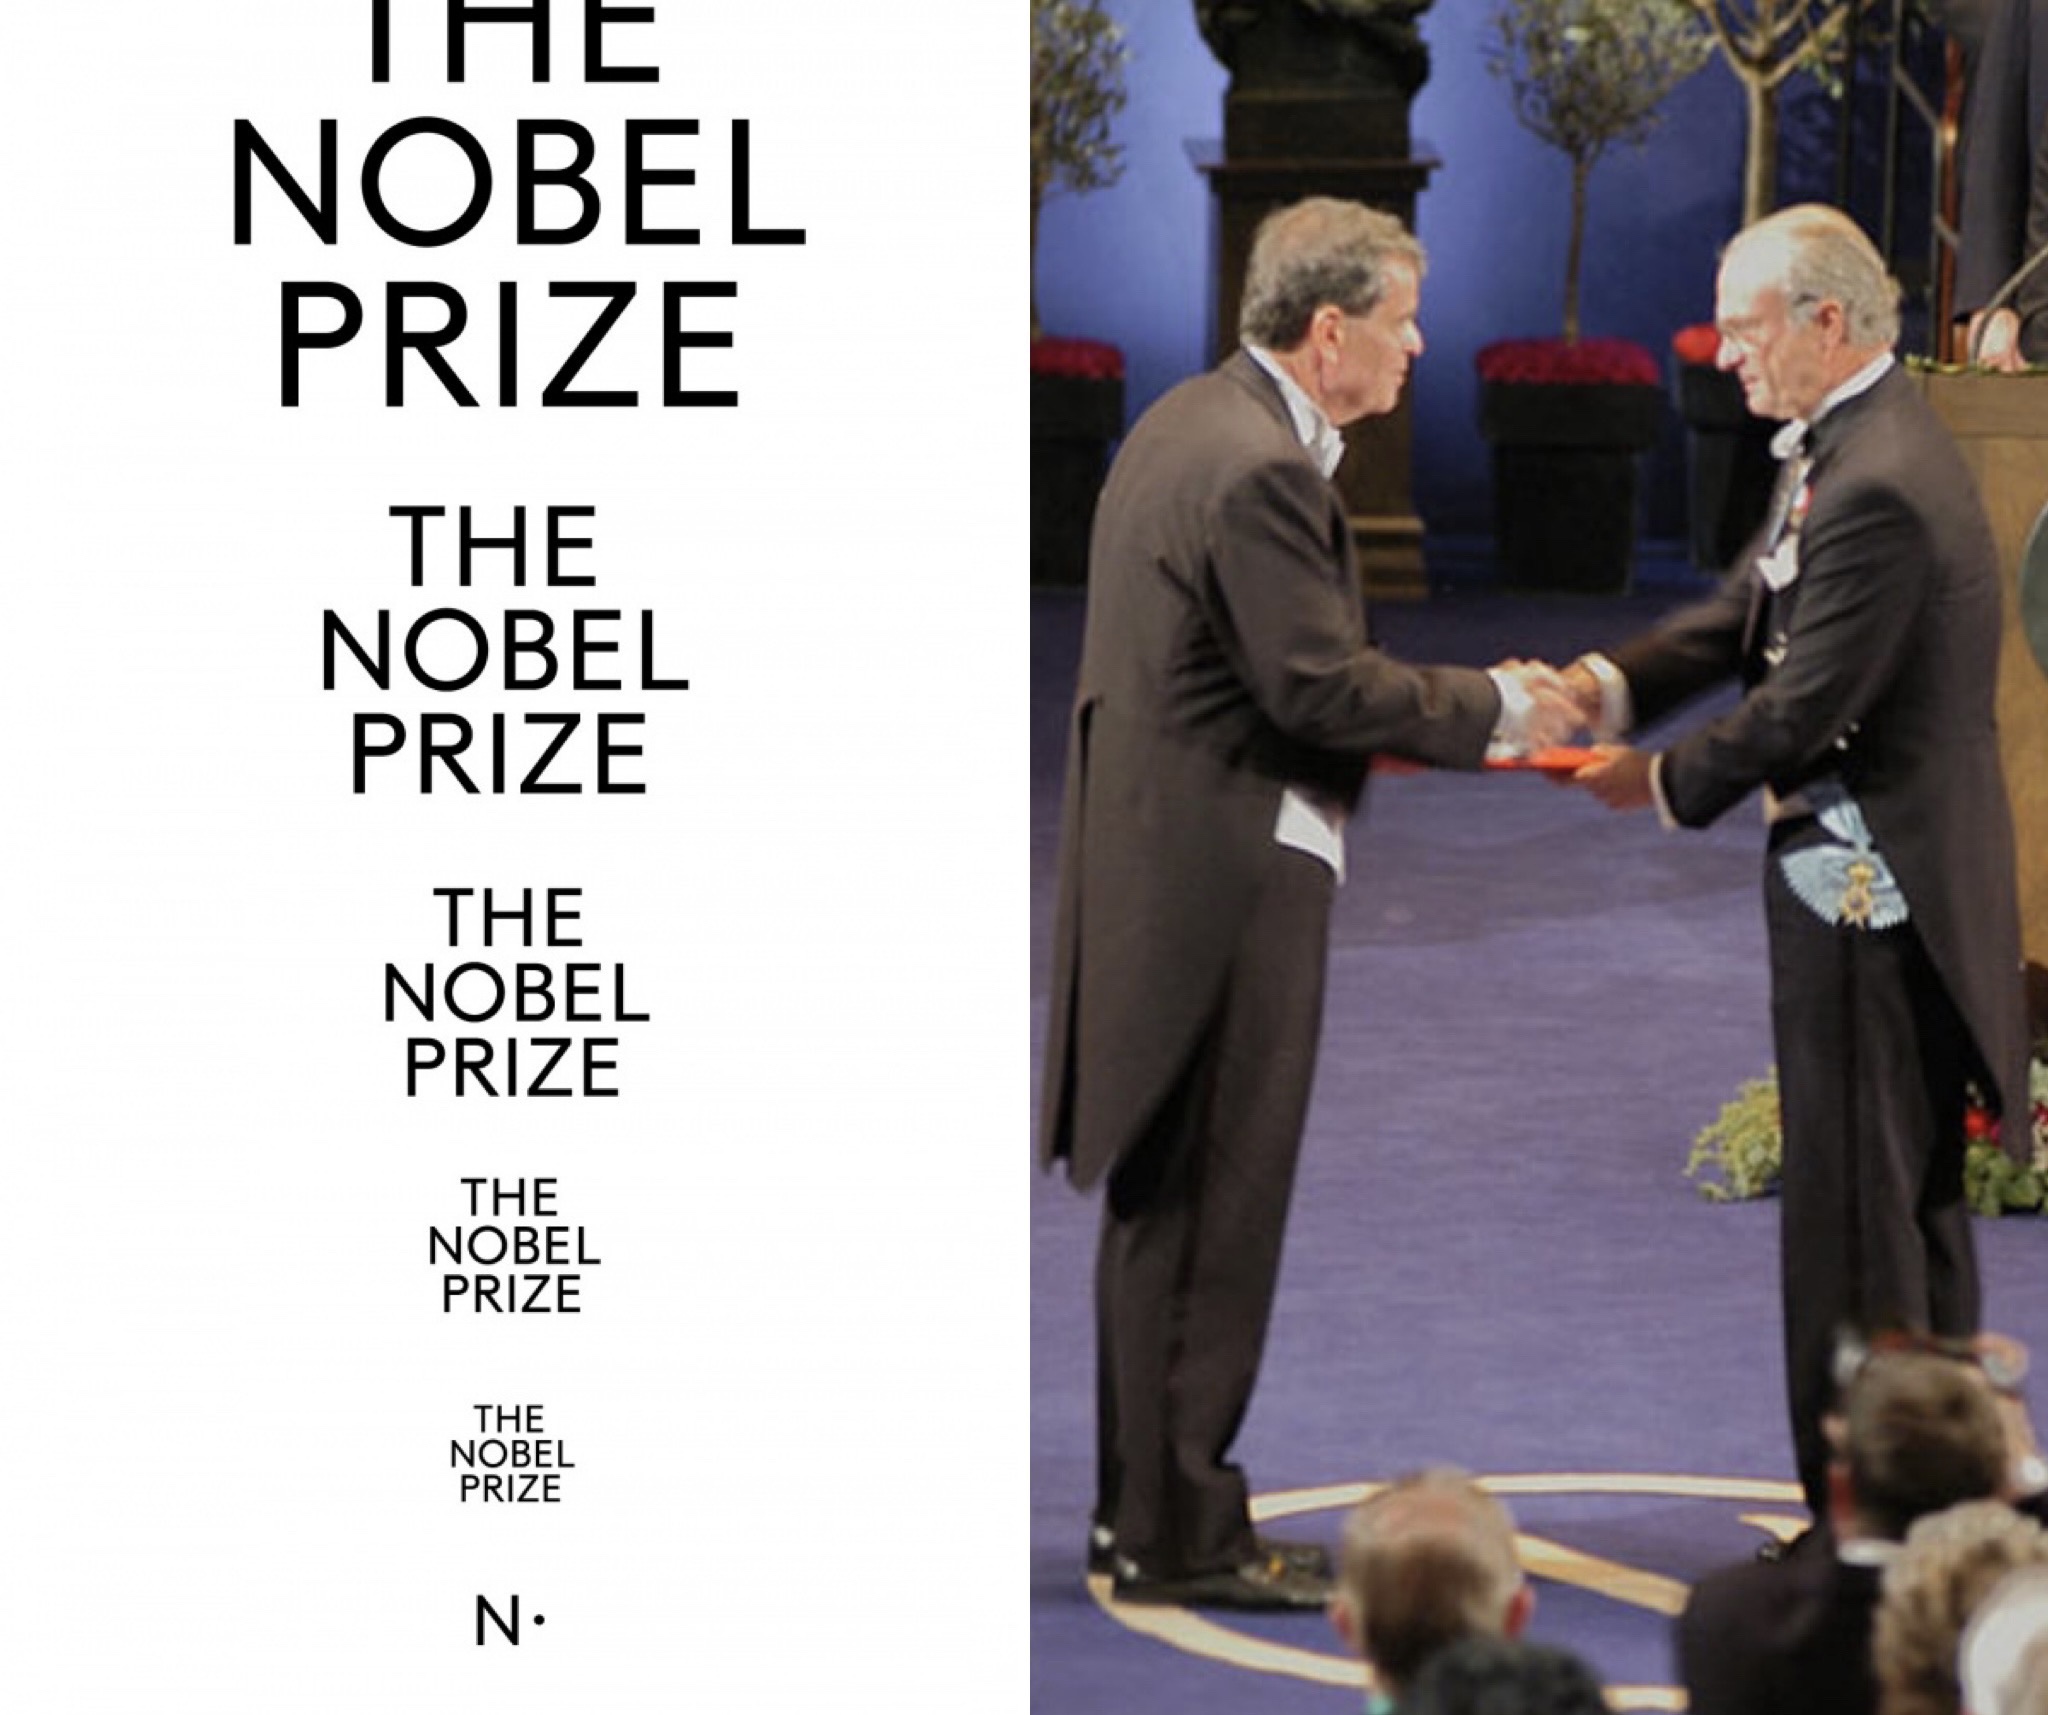 Un geniu laureat al Premiului Nobel pentru Chimie, vine la Cluj